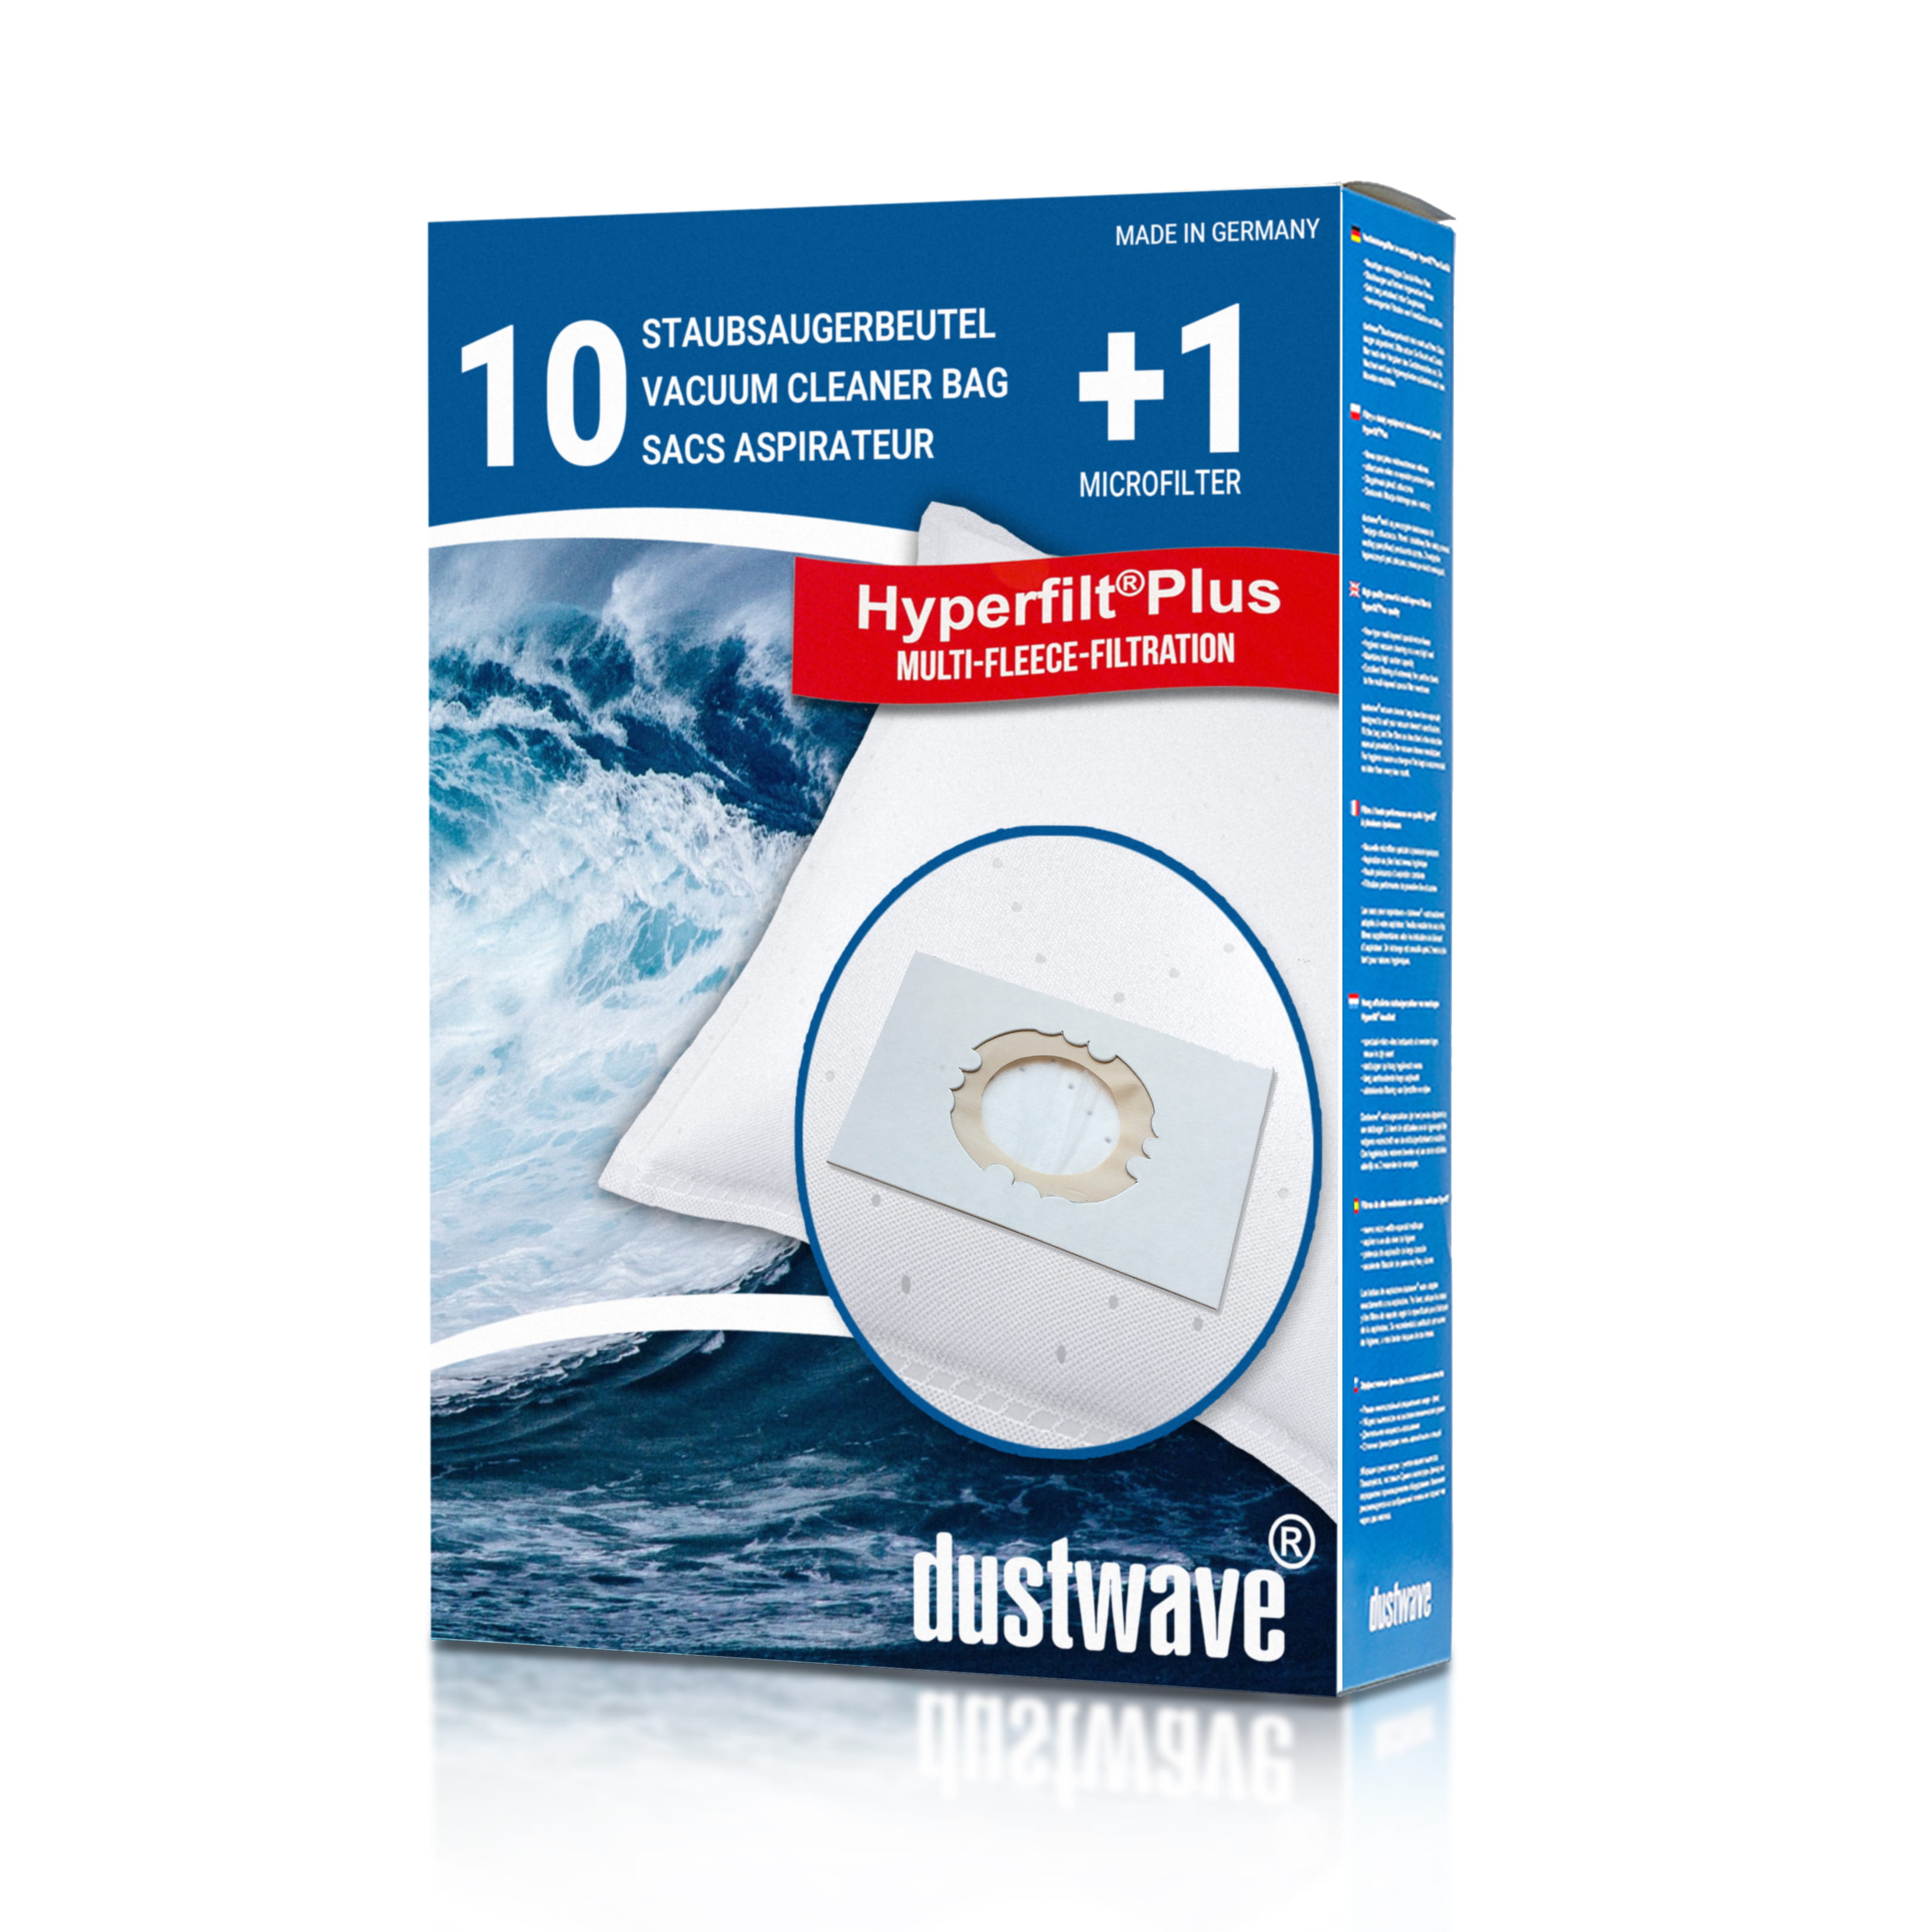 Dustwave® 10 Staubsaugerbeutel für SWIRL VAC 120 (UNI) - hocheffizient, mehrlagiges Mikrovlies mit Hygieneverschluss - Made in Germany